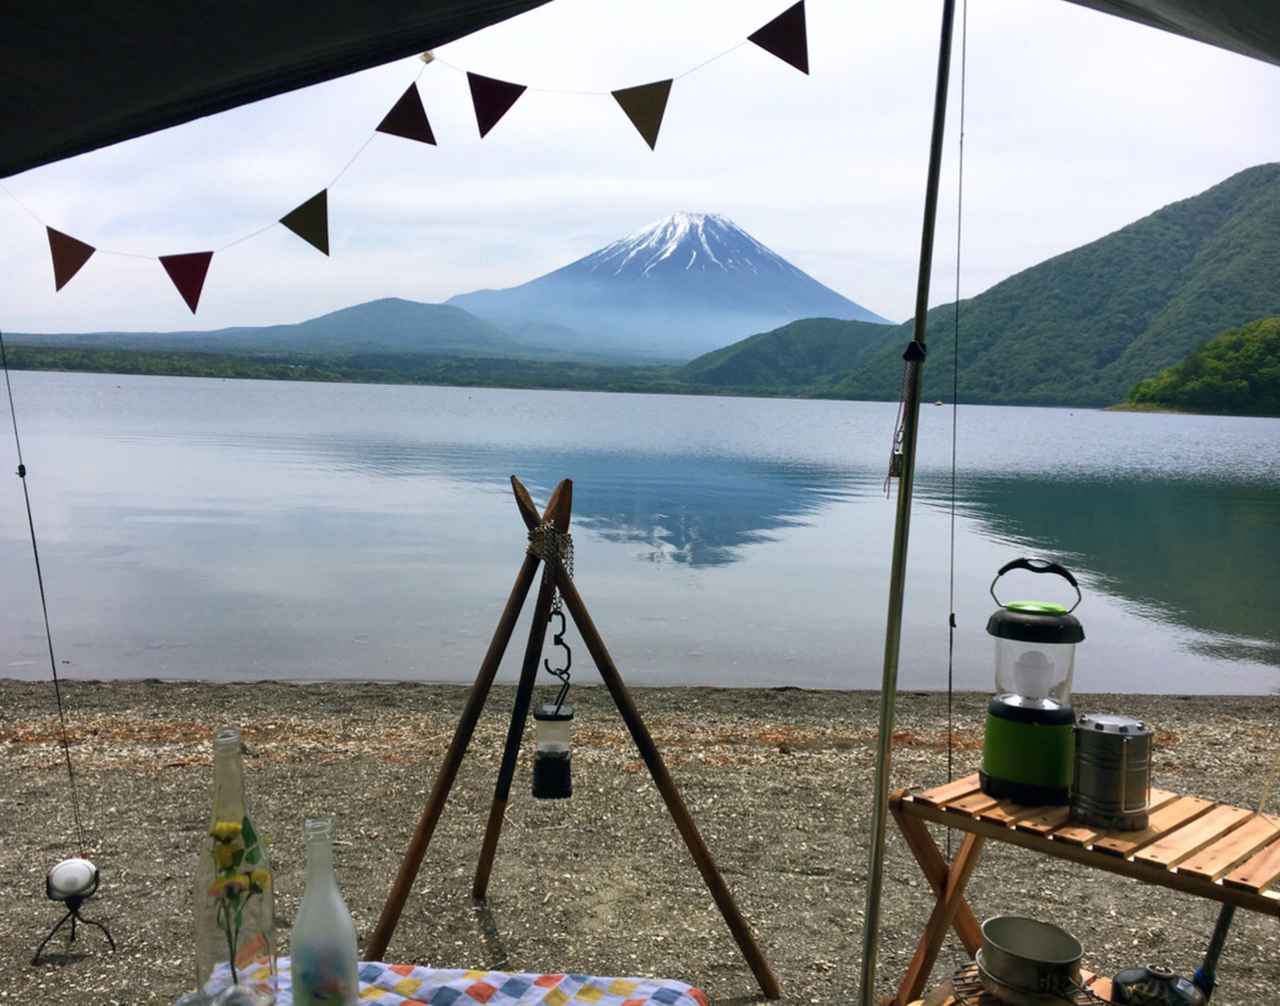 山梨県のおすすめキャンプ場ランキング 富士山 富士五湖の絶景や川遊びを楽しめる場所も お役立ちキャンプ情報 22年10月30日 日本気象協会 Tenki Jp